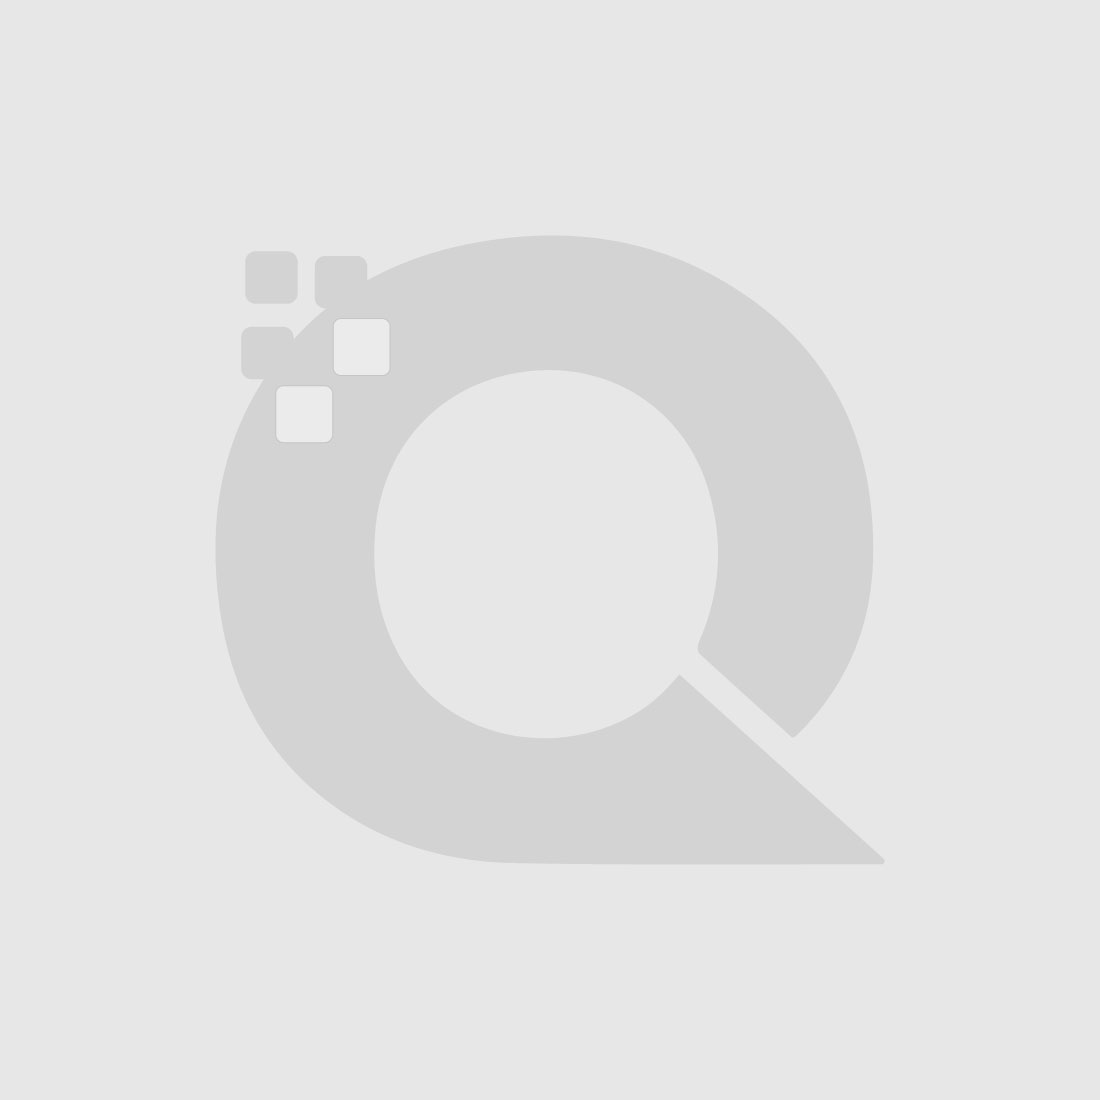 Guerniss Paris Velvet Matte Lipstick - GS026 - 3.5g